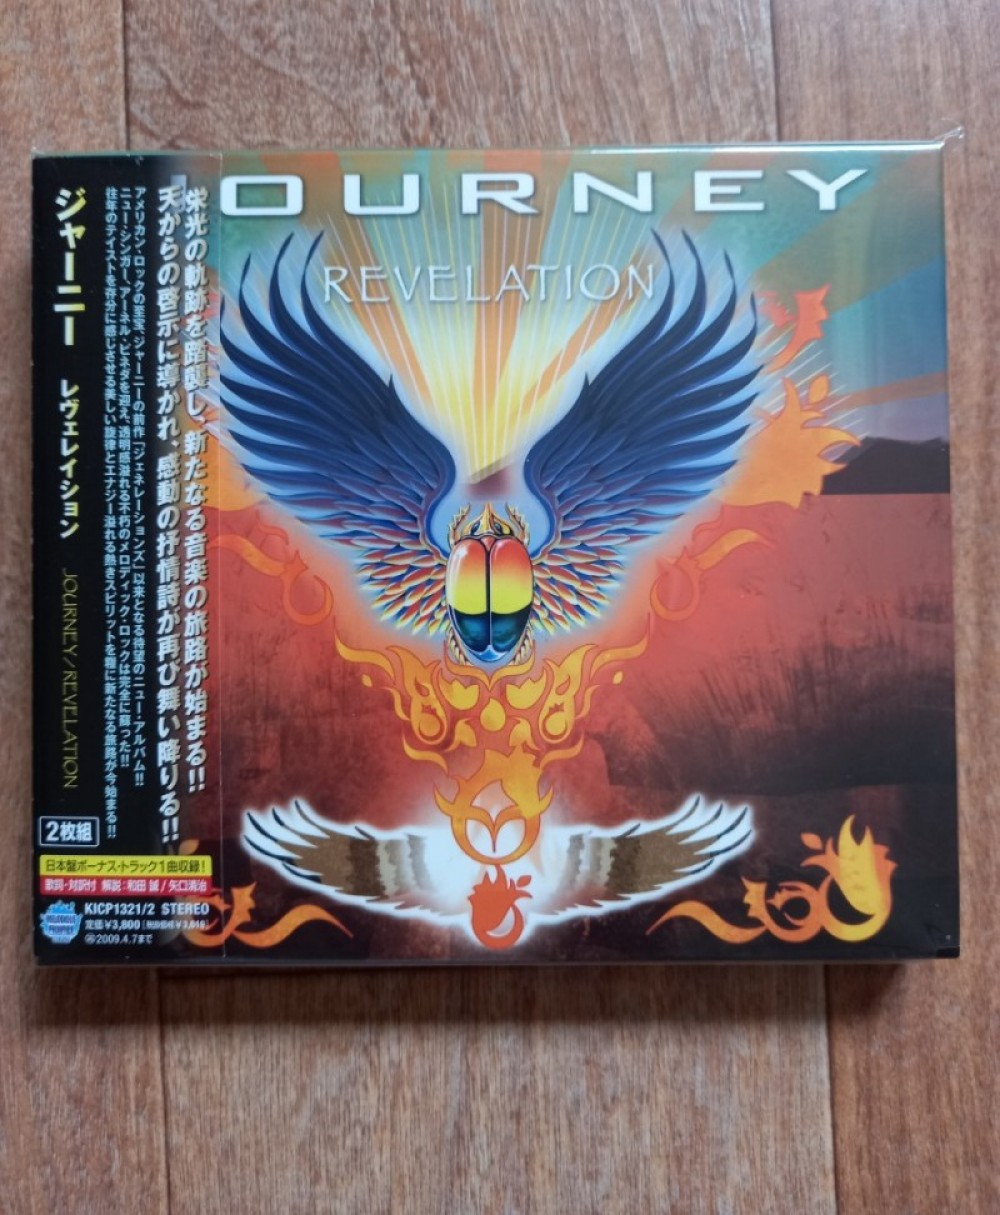 REVELATION  - Journey.  Album covers, Revelation, Poster